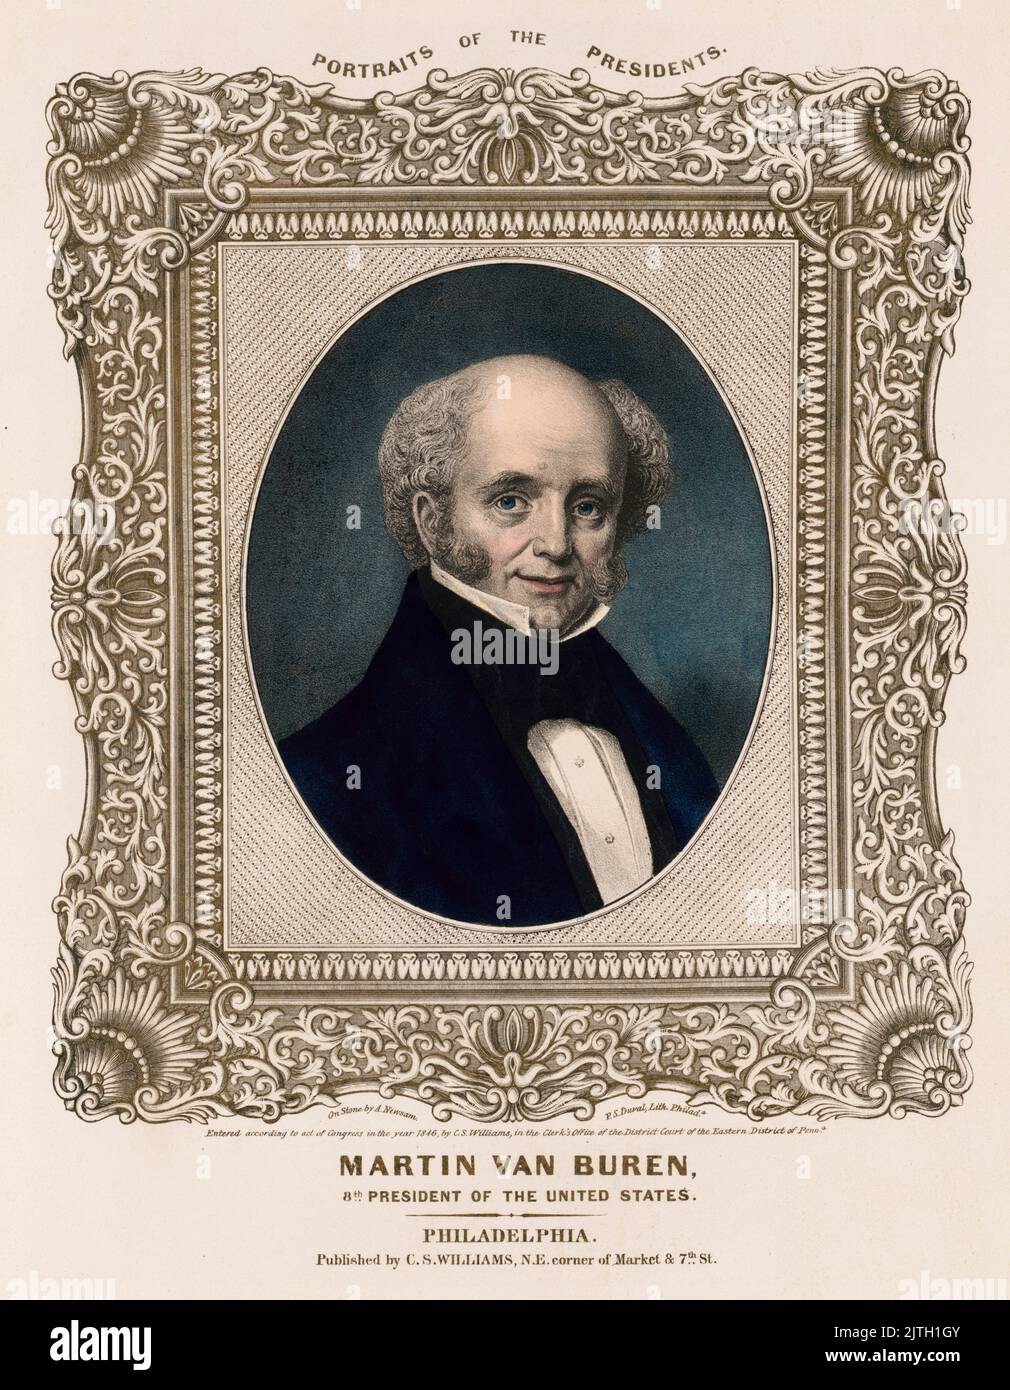 Ein Porträt von Präsident Martin van Buren. Martin van Buren war der achte Präsident der USA. Stockfoto